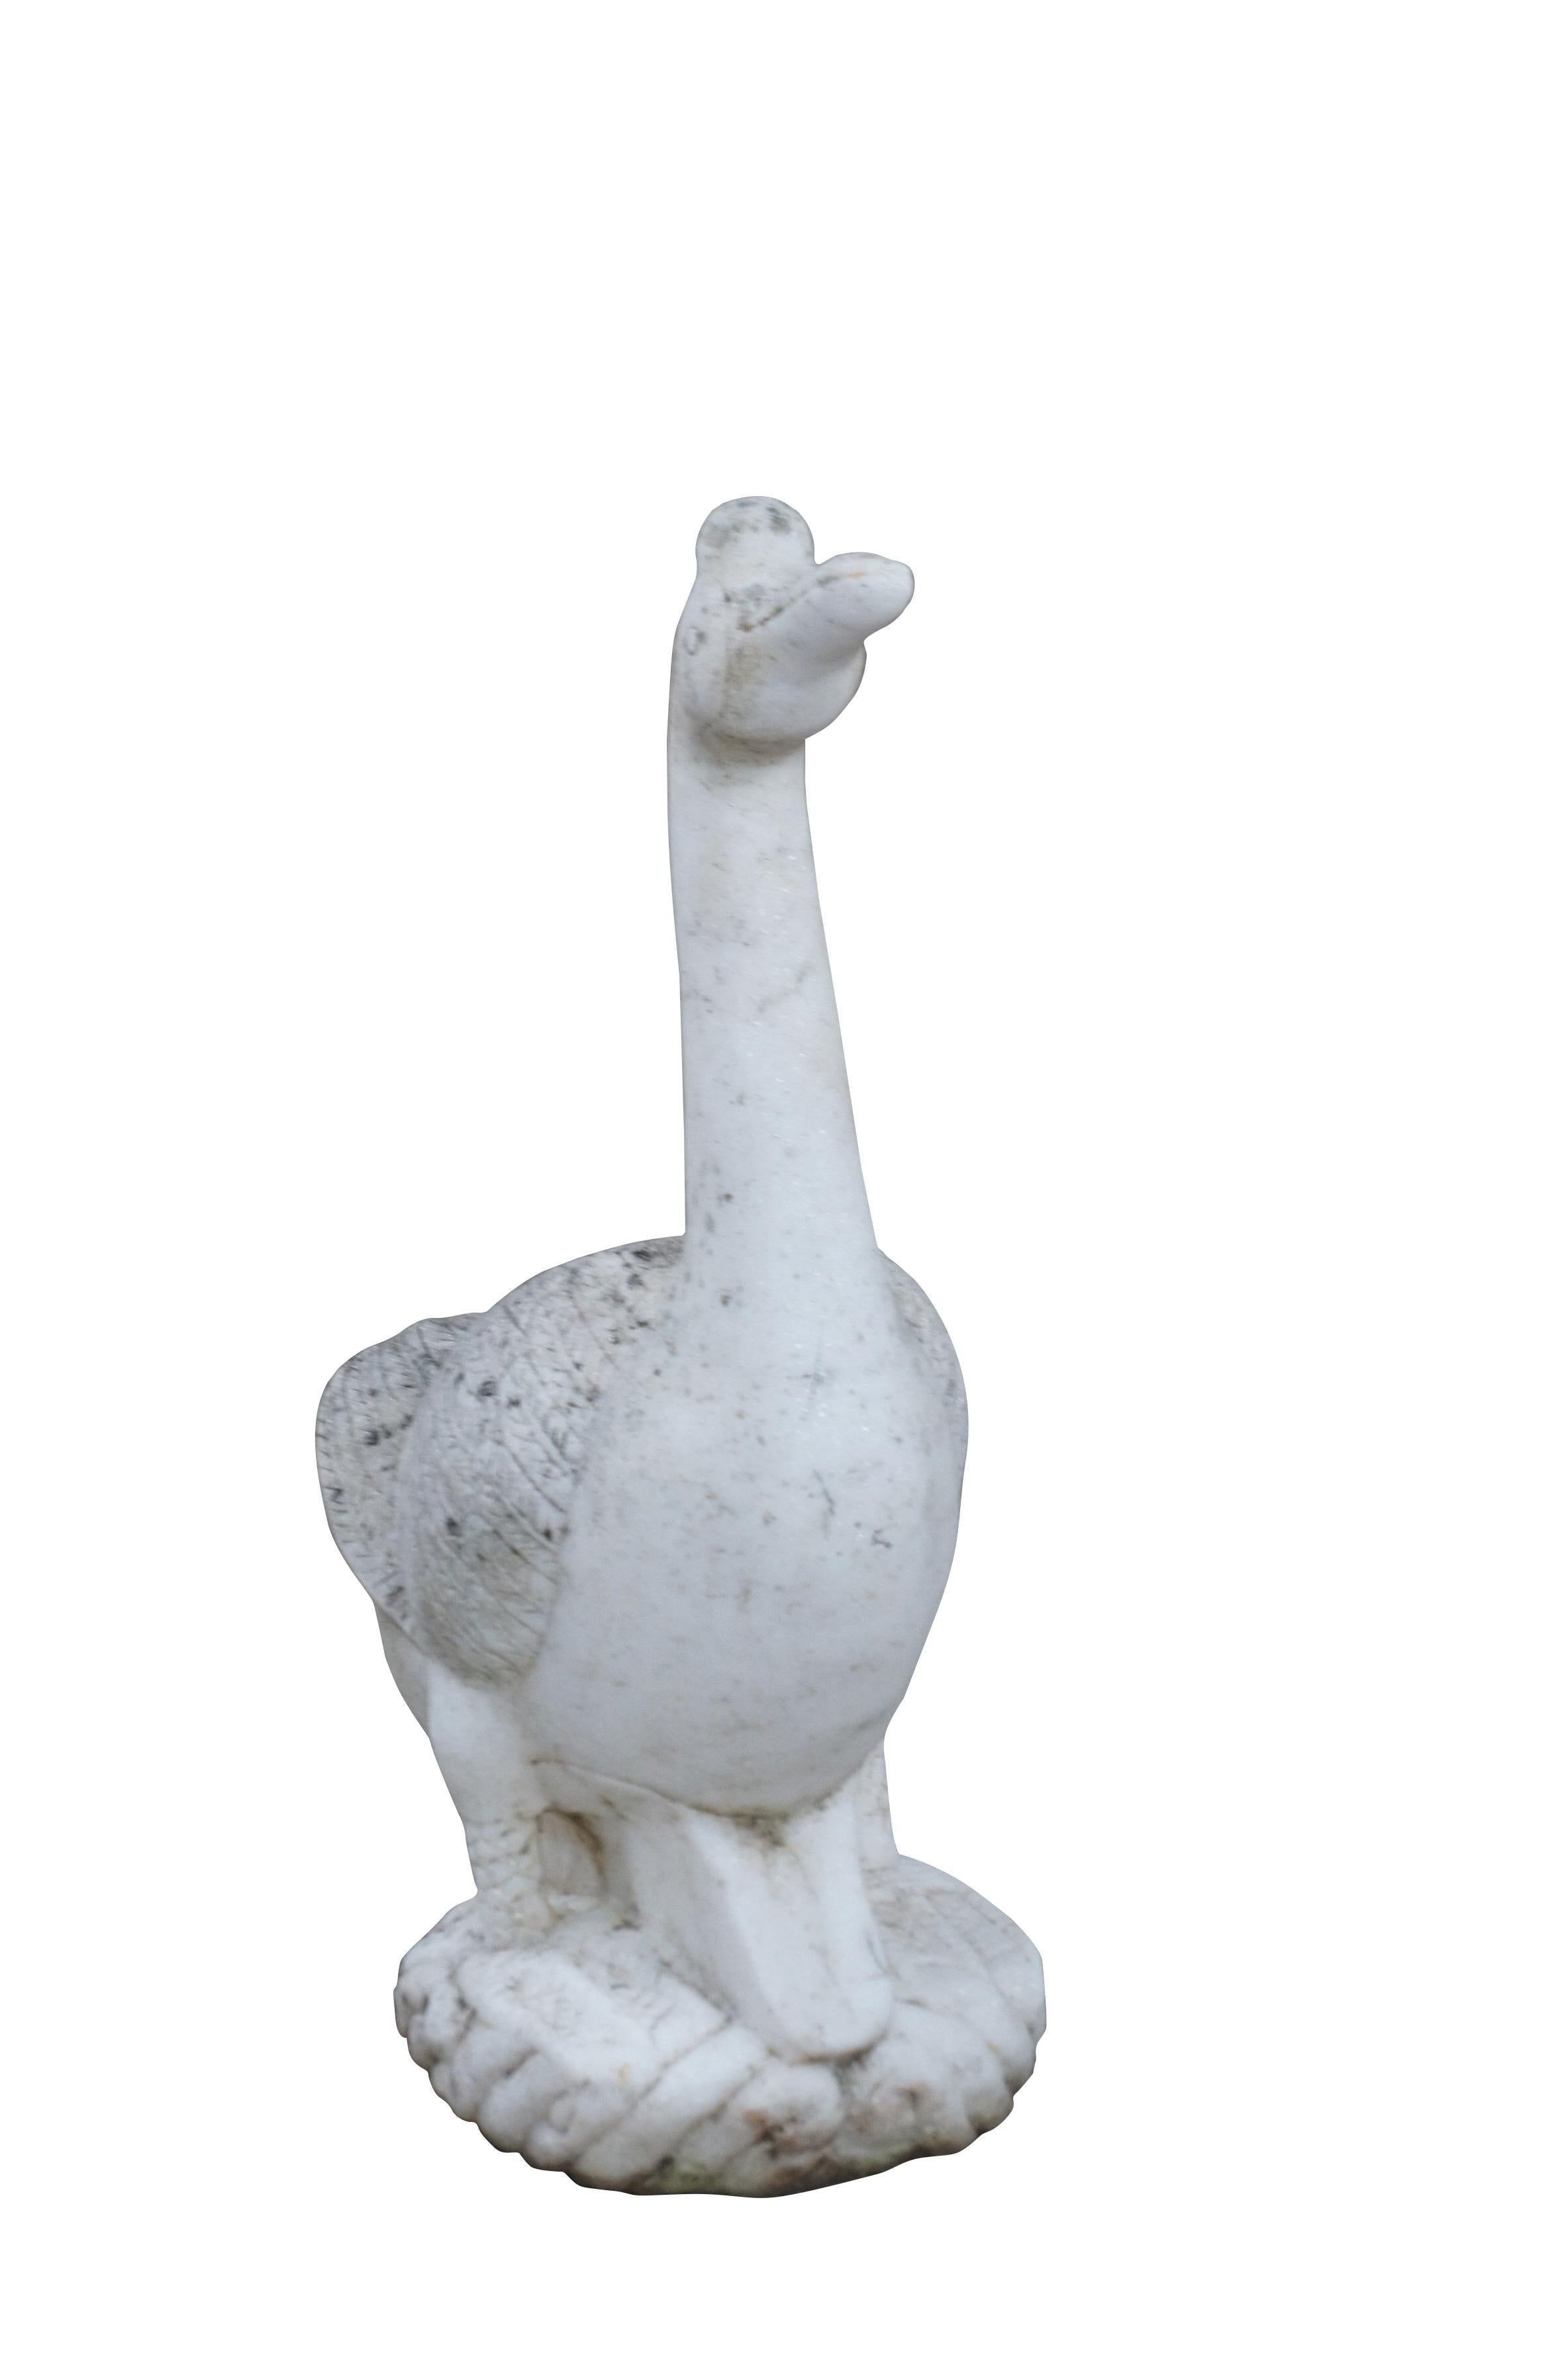 Lourde sculpture ancienne de jardin en marbre sculpté en forme d'oie. Fabriqué en Italie vers les années 1930.

Dimensions :
19